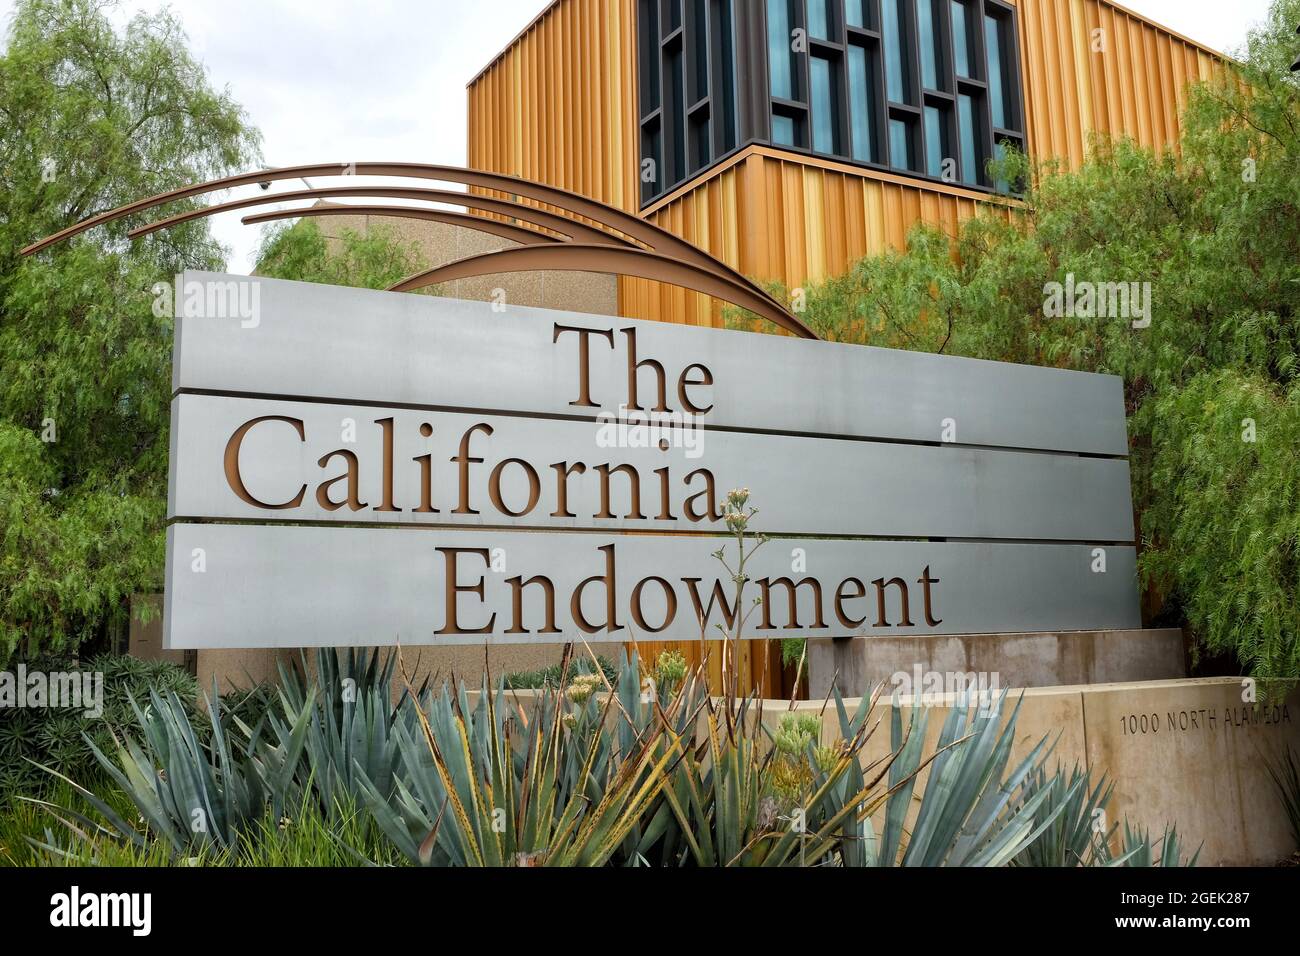 LOS ANGELES, KALIFORNIEN - 18 AUG 2021: Das California Endowment zielt darauf ab, den Zugang zu bezahlbarer, hochwertiger Gesundheitsversorgung für unterversorgte Menschen zu erweitern Stockfoto